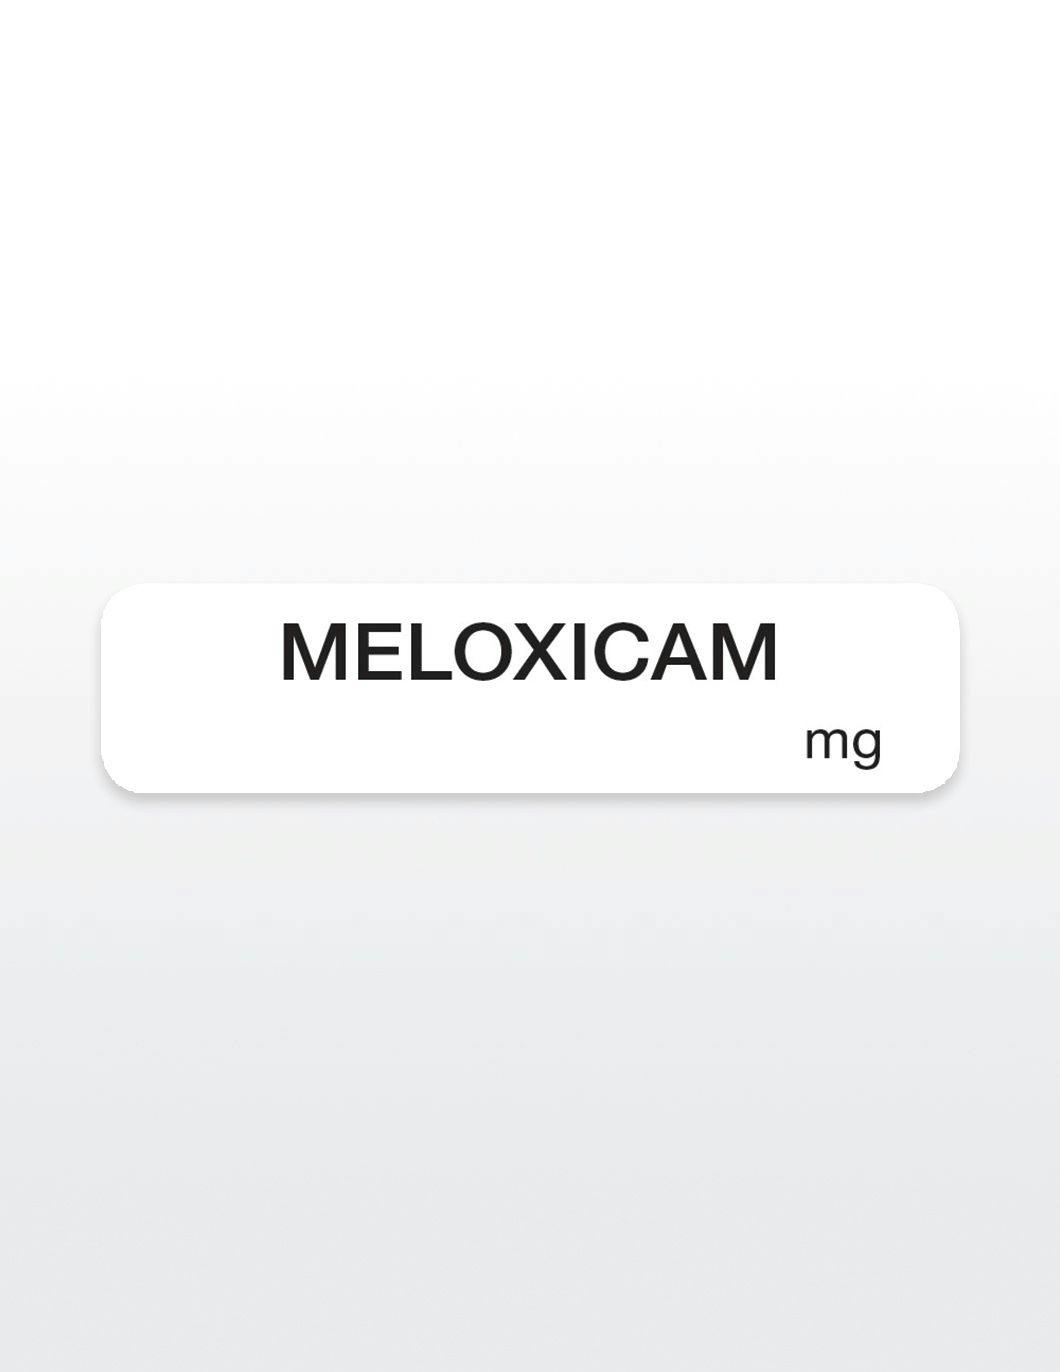 meloxicam-drug-syringe-stickers